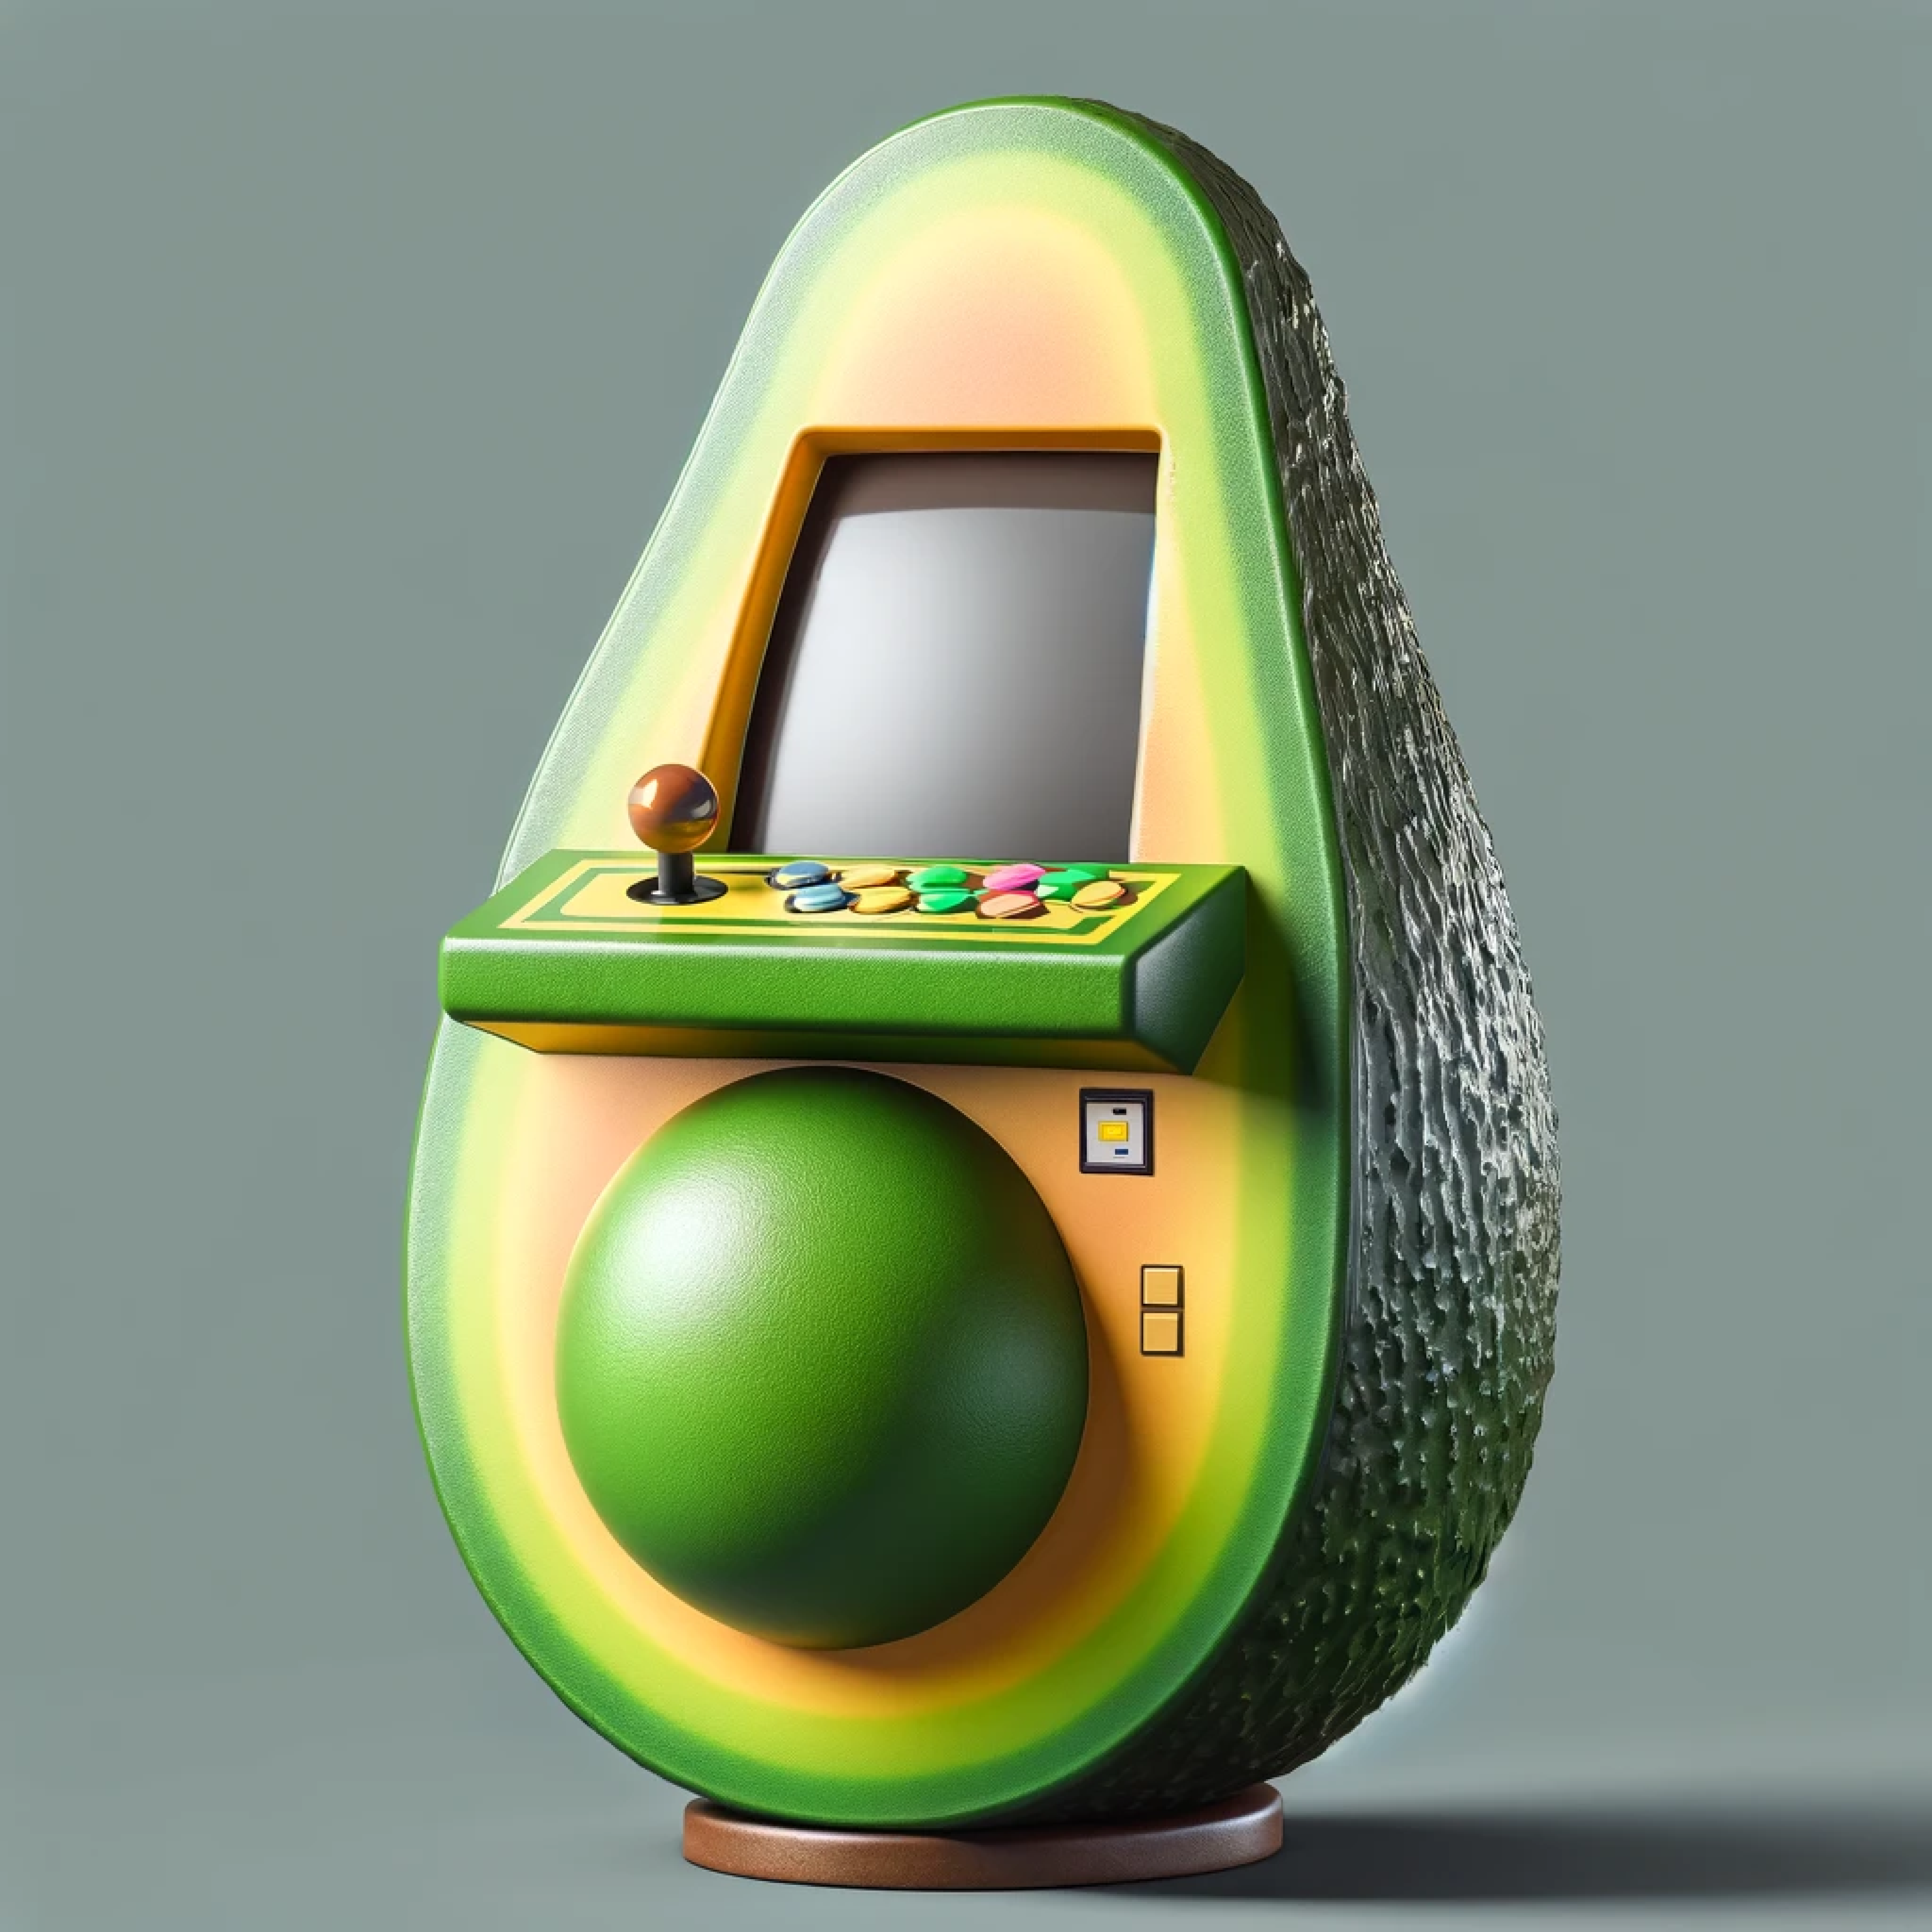 una máquina de arcade con forma de aguacate